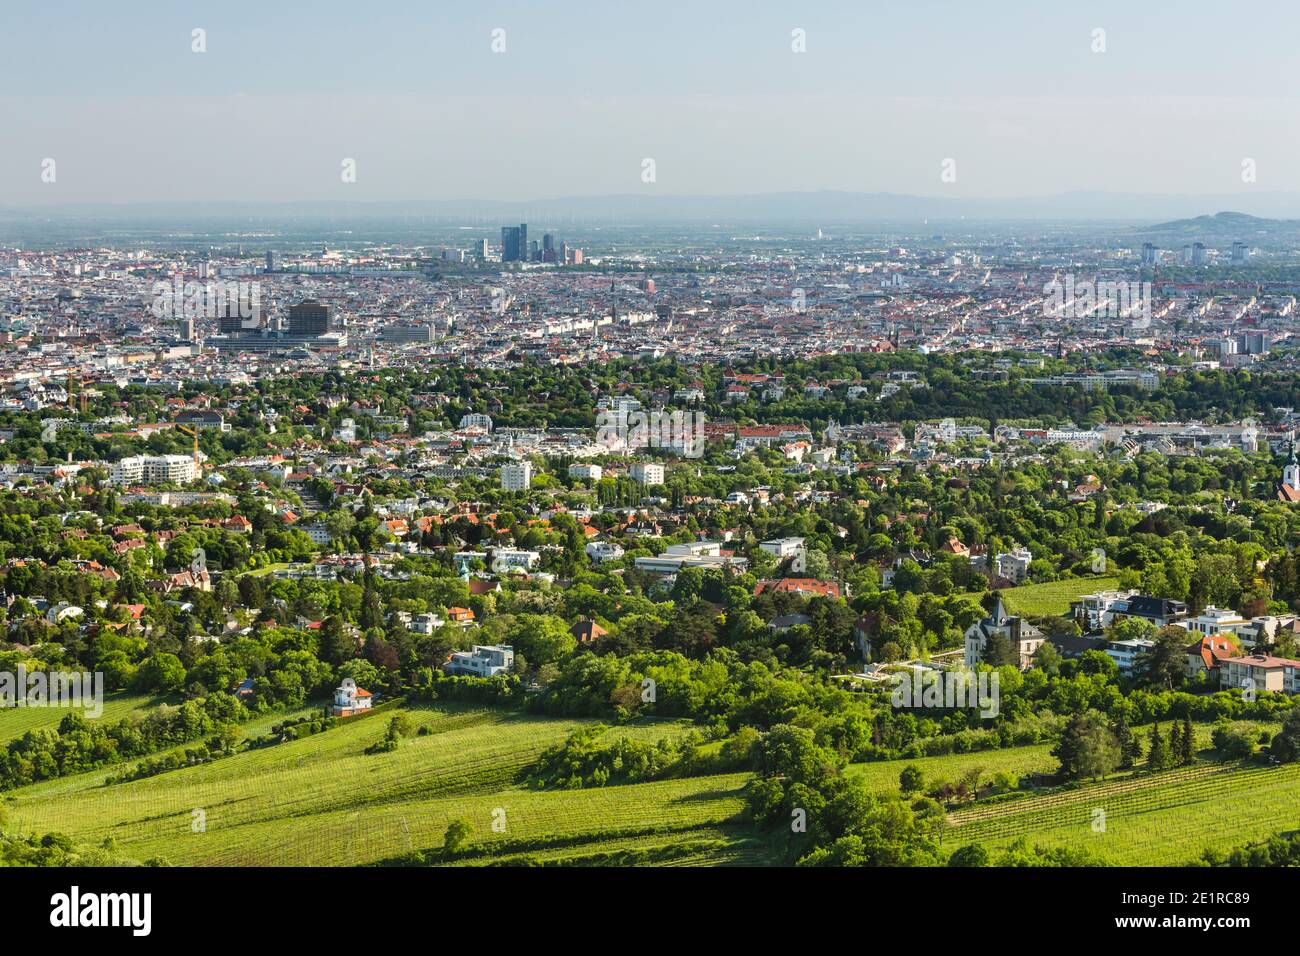 Vista desde una colina a la ciudad de Viena con la clínica universitaria a la izquierda en Austria. Foto de stock